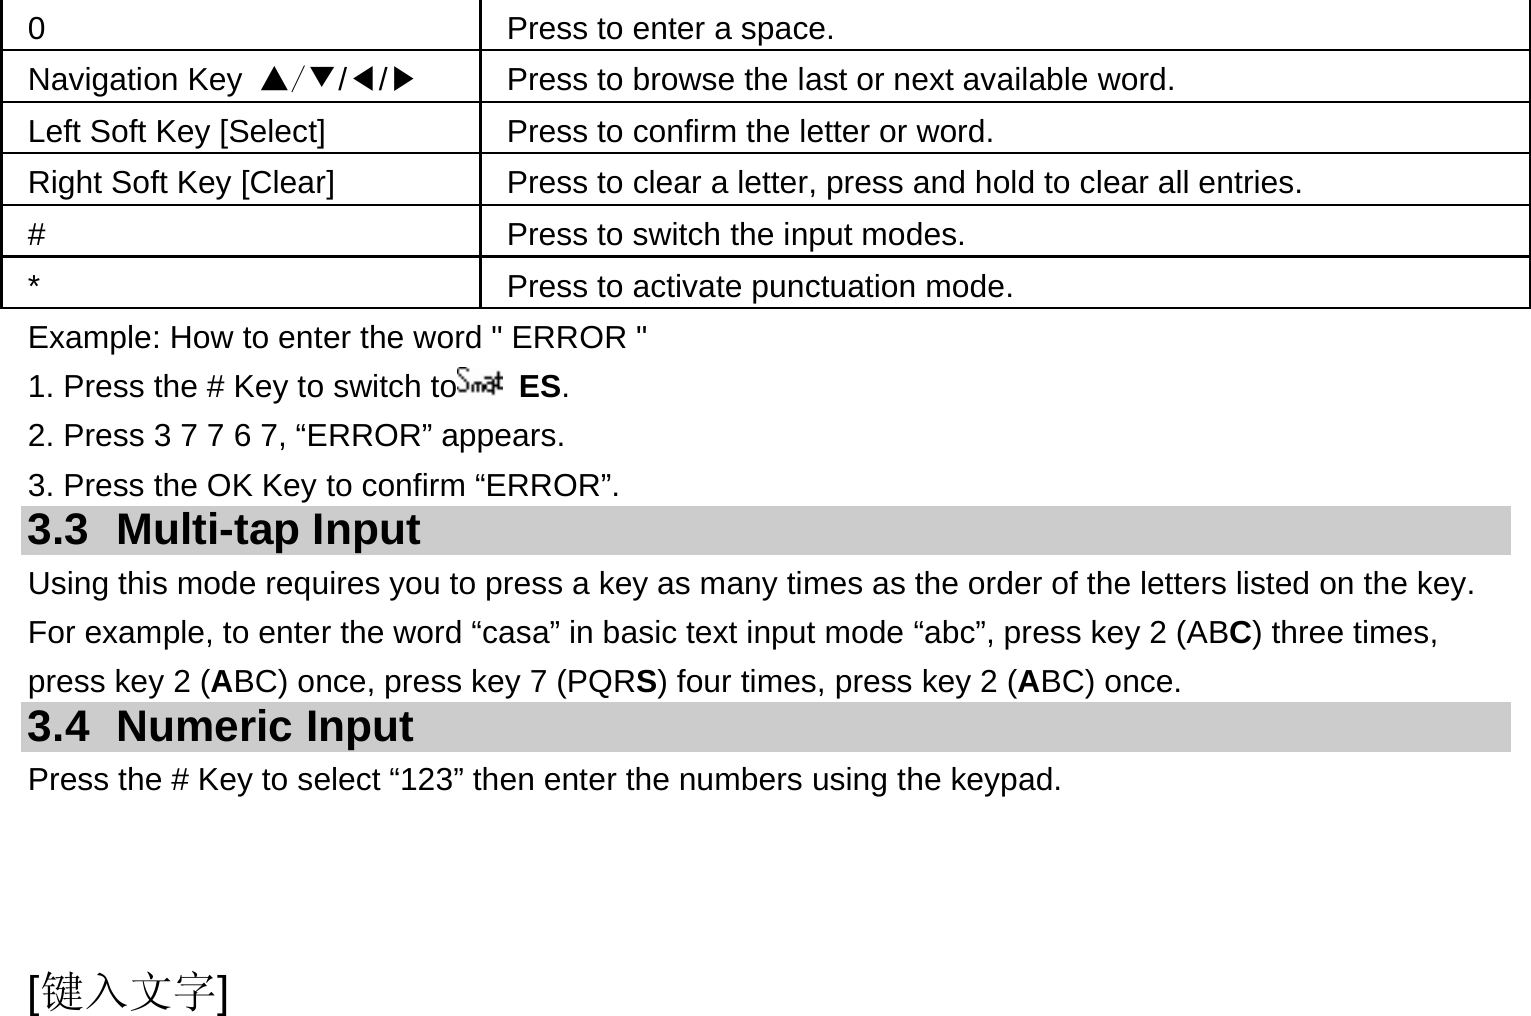  [键入文字] 0  Press to enter a space. Navigation Key ▲/▼/◀/▶  Press to browse the last or next available word. Left Soft Key [Select]  Press to confirm the letter or word. Right Soft Key [Clear]  Press to clear a letter, press and hold to clear all entries. #  Press to switch the input modes. *  Press to activate punctuation mode. Example: How to enter the word &quot; ERROR &quot; 1. Press the # Key to switch to  ES. 2. Press 3 7 7 6 7, “ERROR” appears. 3. Press the OK Key to confirm “ERROR”. 3.3 Multi-tap Input Using this mode requires you to press a key as many times as the order of the letters listed on the key. For example, to enter the word “casa” in basic text input mode “abc”, press key 2 (ABC) three times, press key 2 (ABC) once, press key 7 (PQRS) four times, press key 2 (ABC) once. 3.4 Numeric Input Press the # Key to select “123” then enter the numbers using the keypad.    